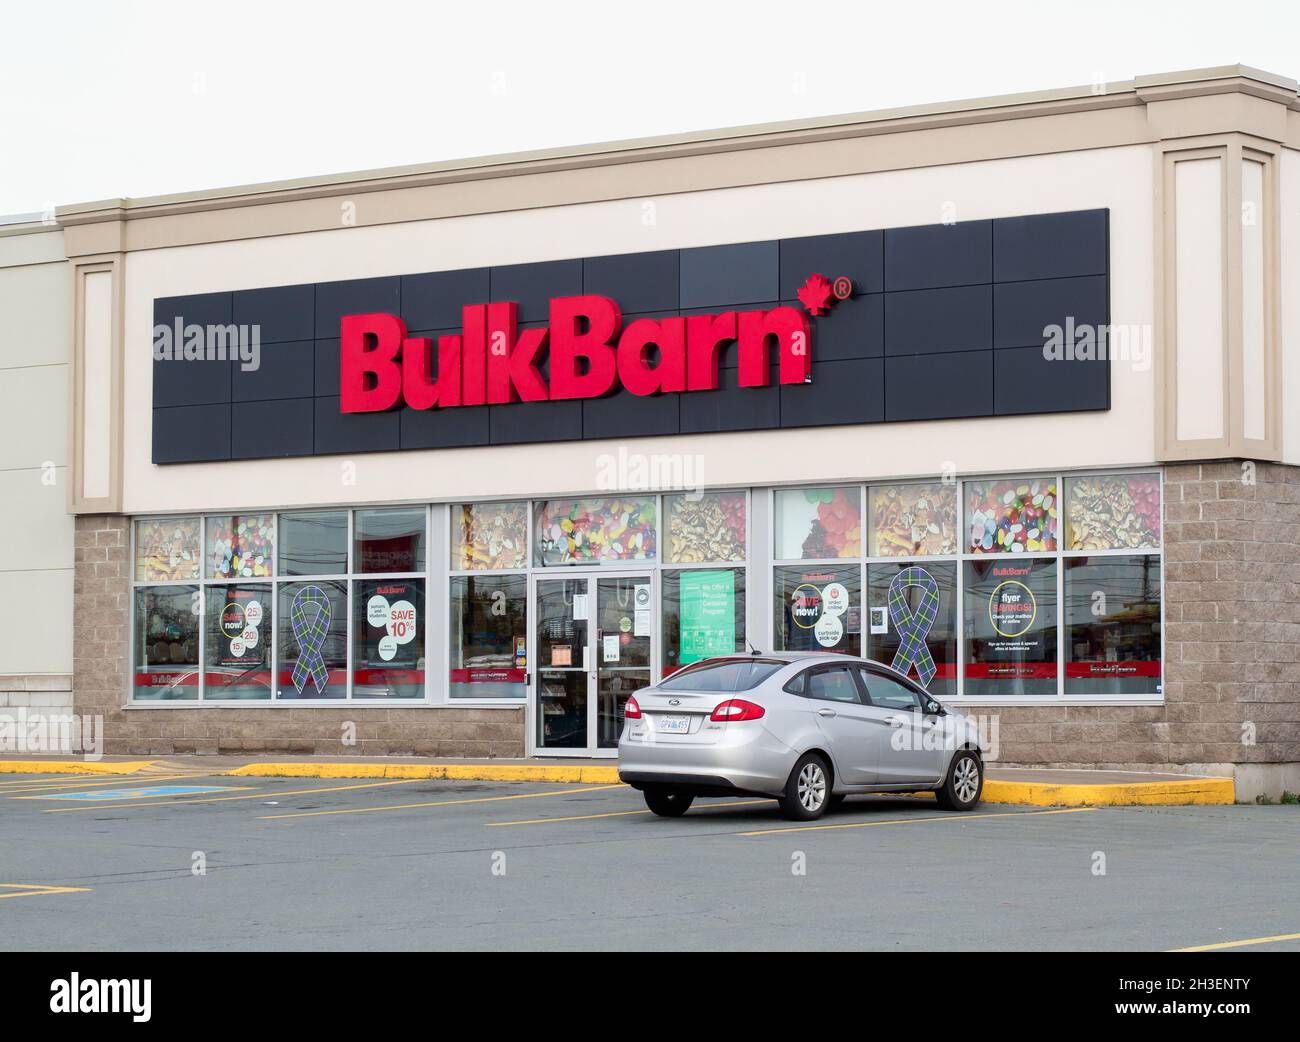 Truro, Kanada - 26. Oktober 2021: BulkBarn Storefront. BulkBarn ist ein kanadisches Großkostgeschäft, das 1982 gegründet wurde. Stockfoto